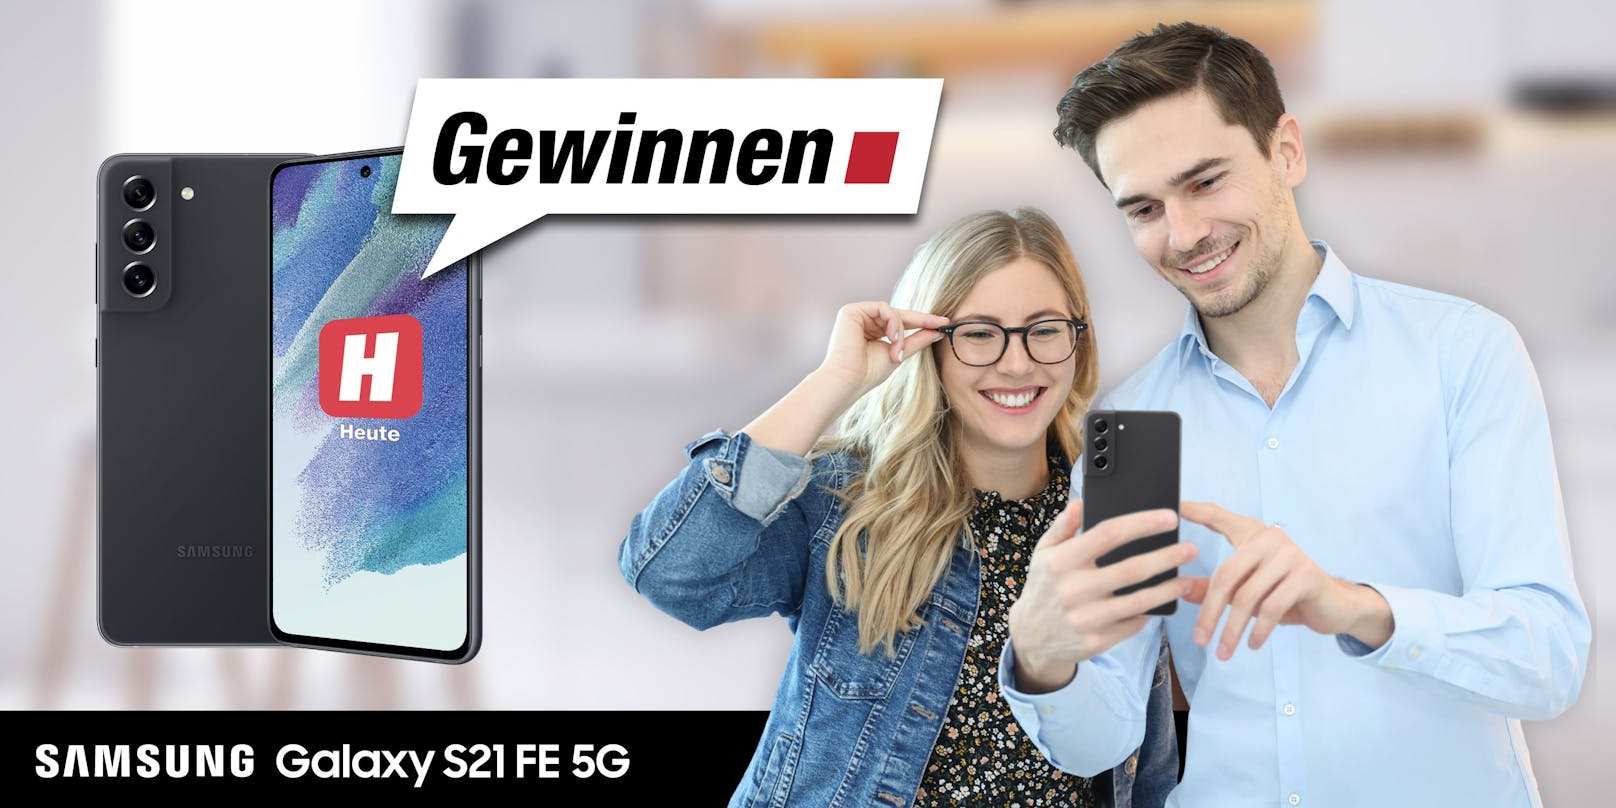 Jetzt teilnehmen &amp; gewinnen: Die Treue unserer Leserinnen und Leser ist uns dieses Top-Smartphone - Samsung Galaxy S21 FE 5G - wert! 